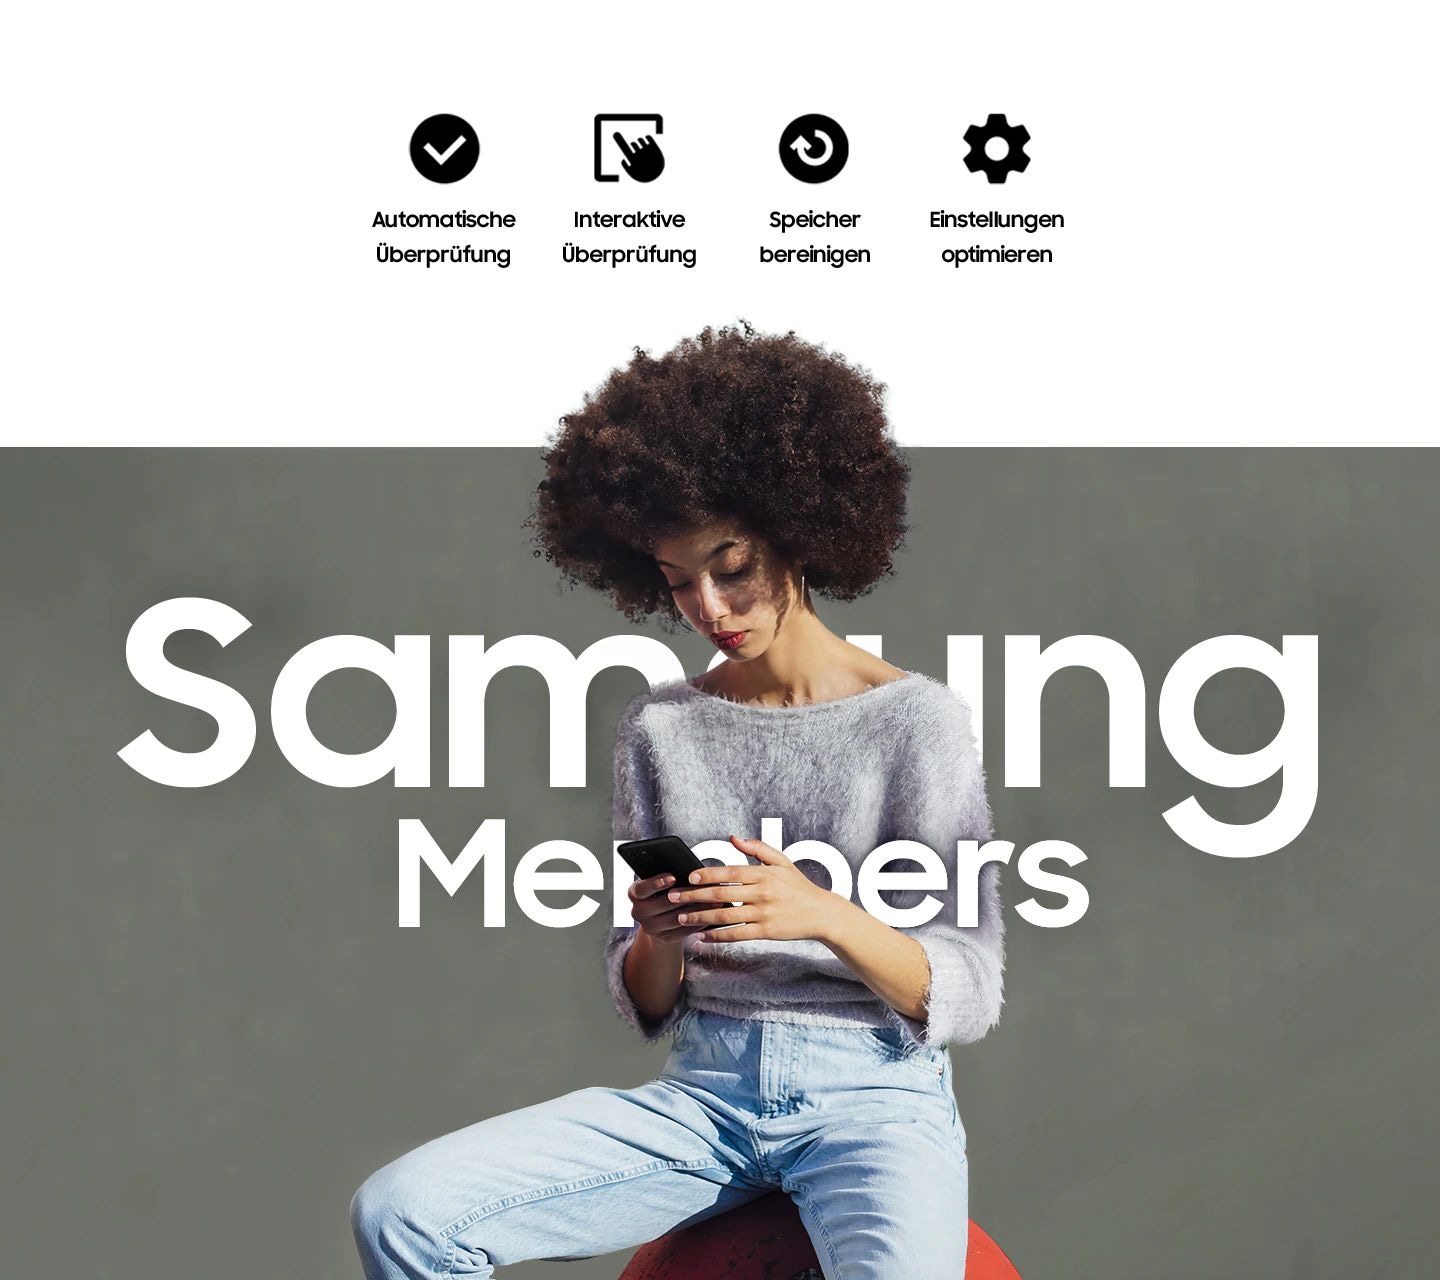 Eine Frau sitzt draußen und benutzt ihr Smartphone. Über ihr ist der Text „Samsung Members“ zu lesen. Über ihr zeigen eine Reihe von Symbolen weitere Funktionen: Automatische Überprüfung, Interaktive Überprüfung, Speicher bereinigen und Einstellungen optimieren. 